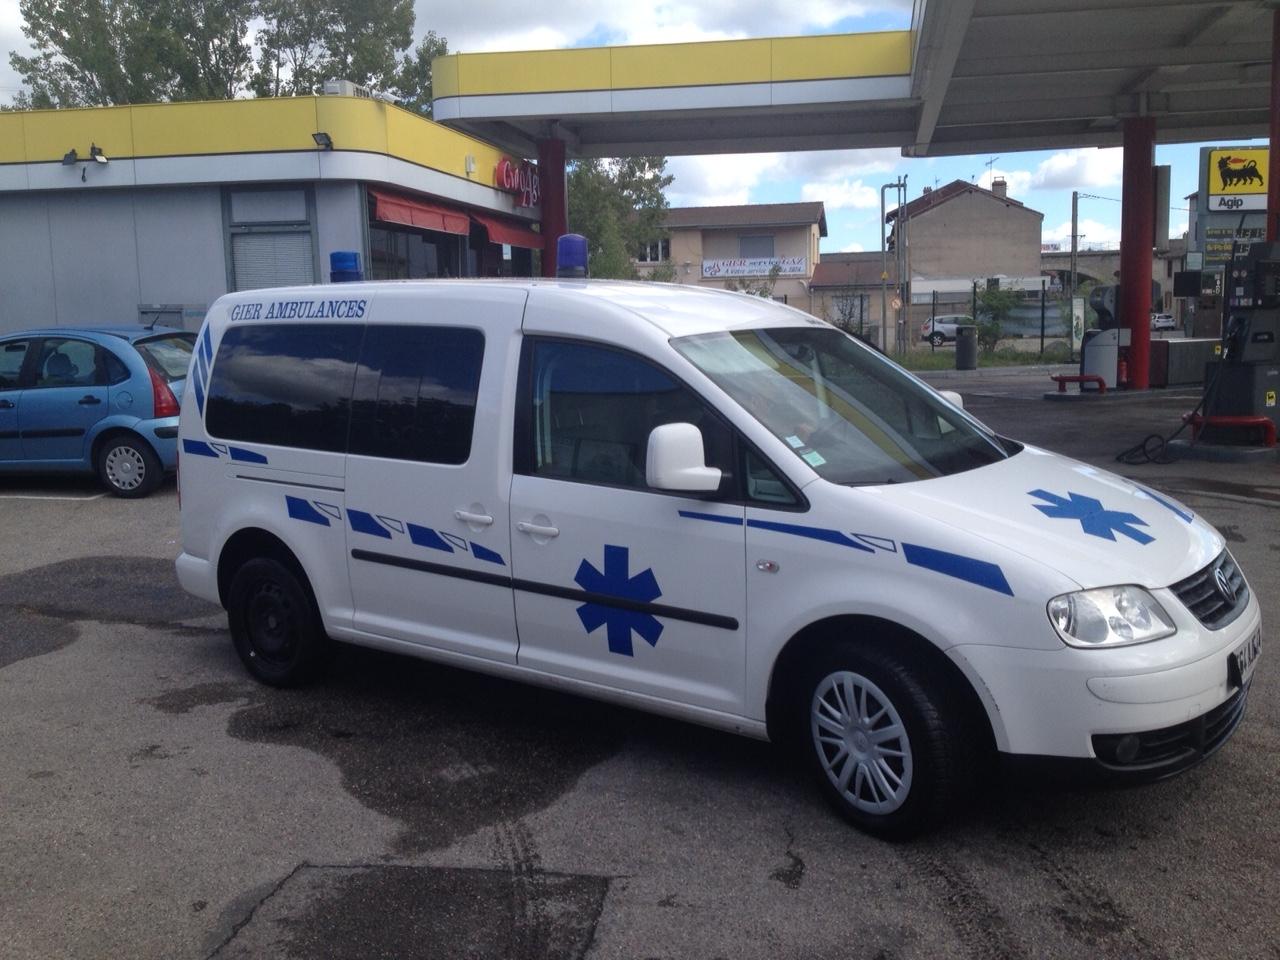 Transports médicaux couchés par les Ambulances Gier à Saint-Chamond